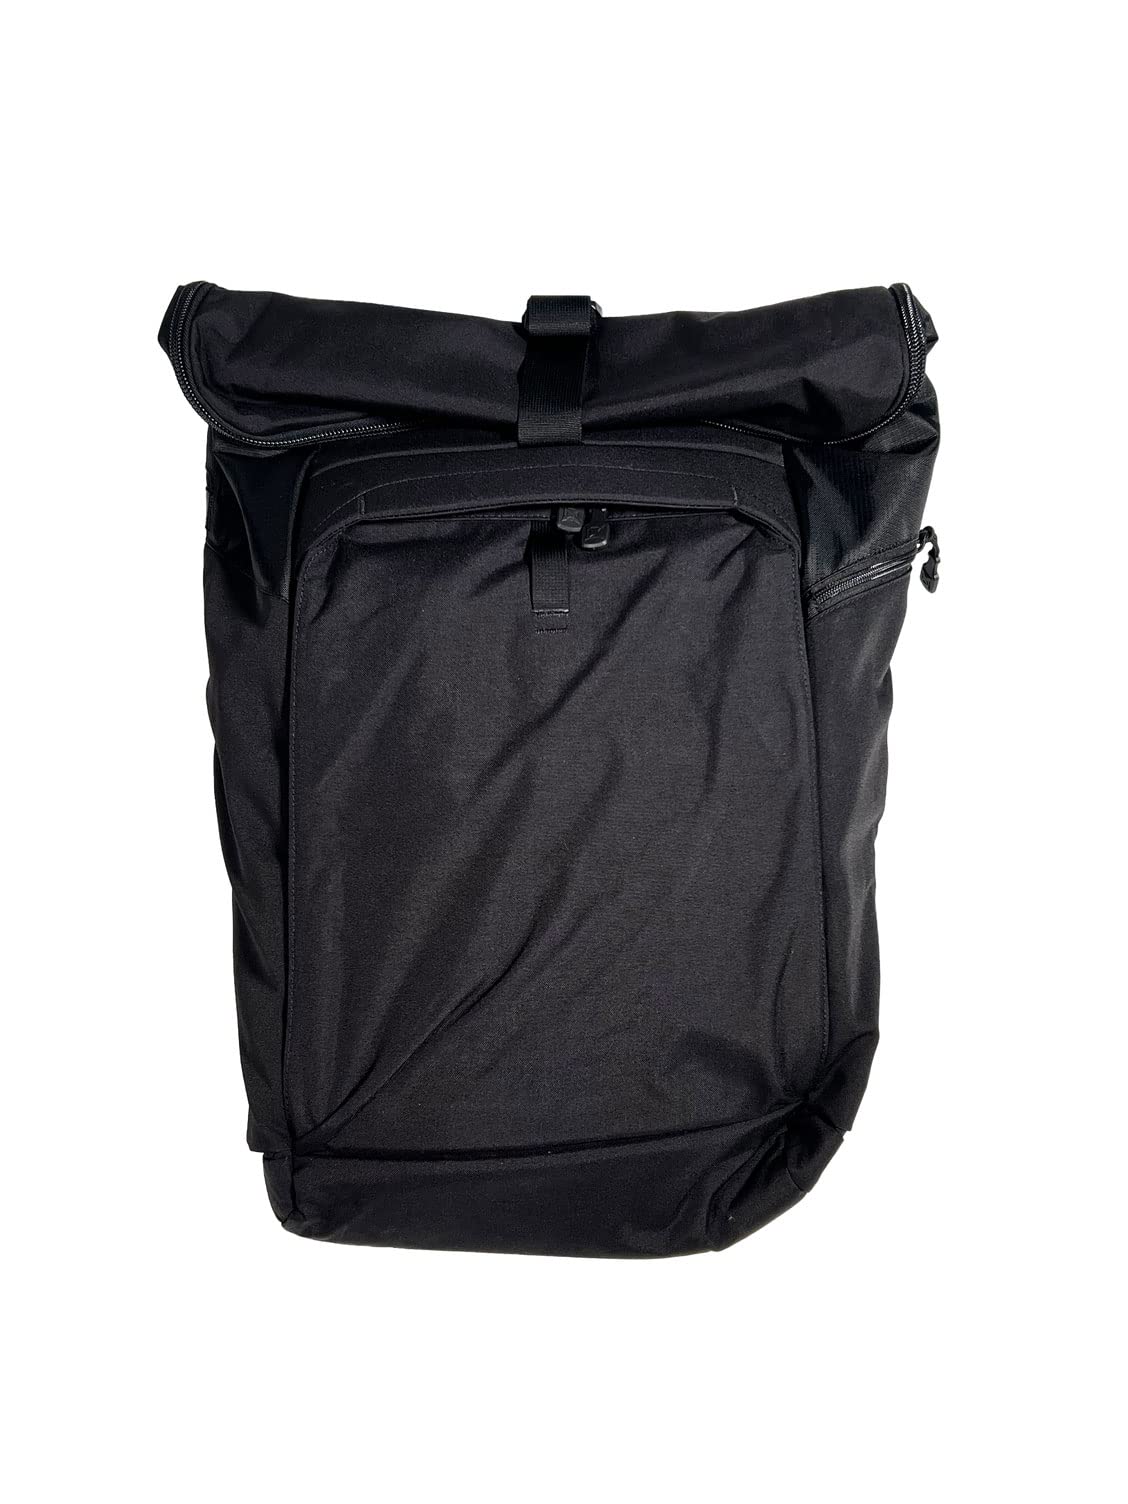 送料無料Vertx Ruck Roll EDC Tactical Roll-Top Backpack 35L for Conceal Carry CCW Travel Work Hiking Hunting Overla